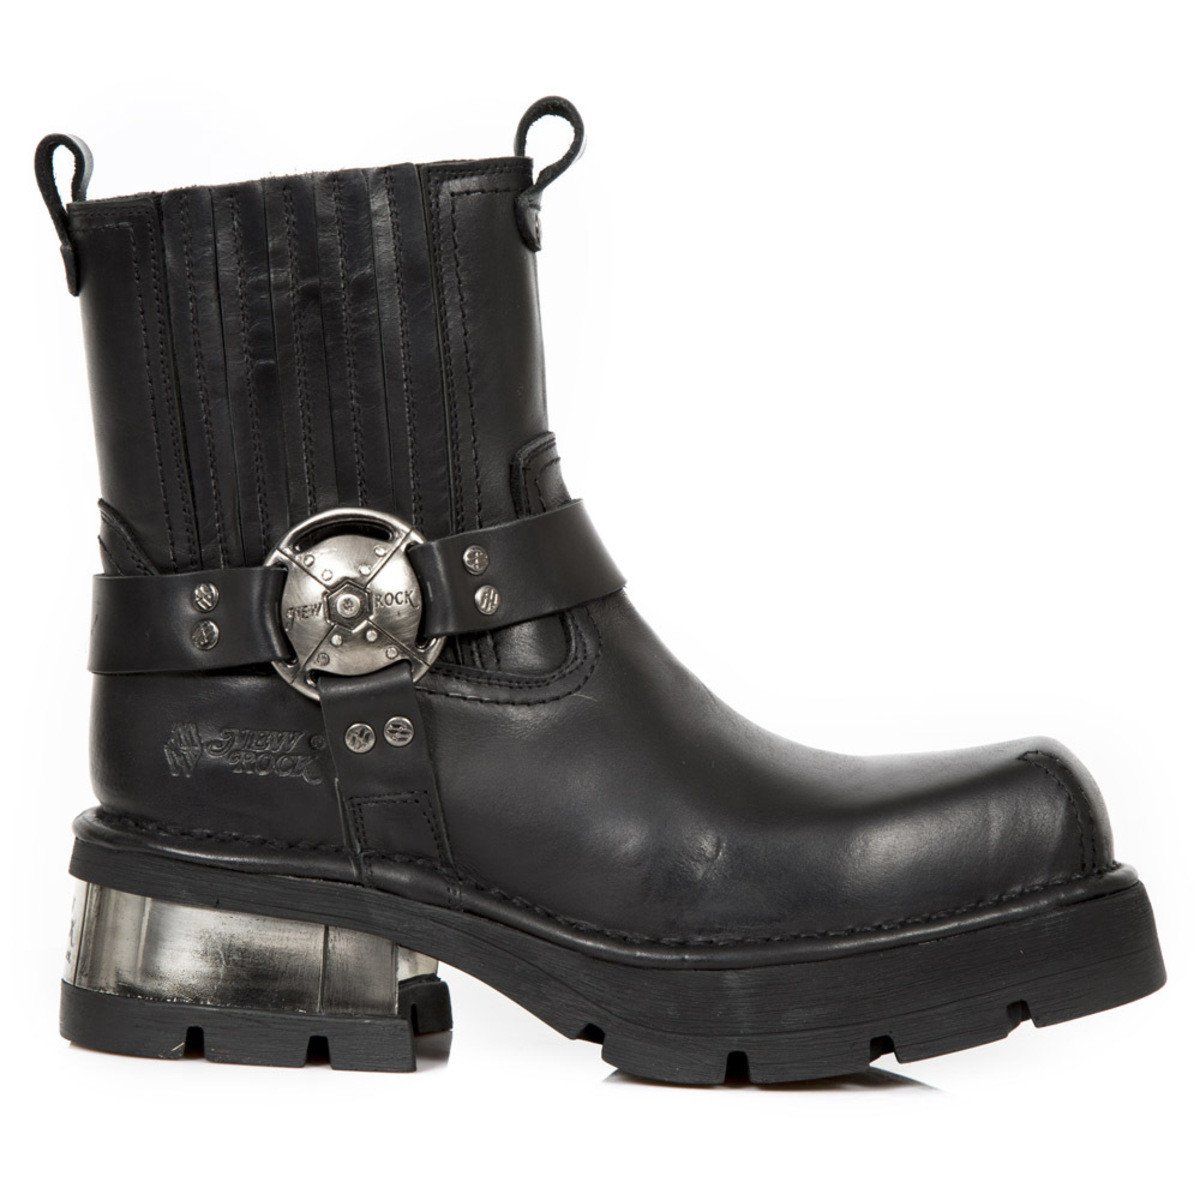 boty kožené dámské - PLANING NEGRO NEW M3 ACERO - NEW ROCK - M.1605-S1 36